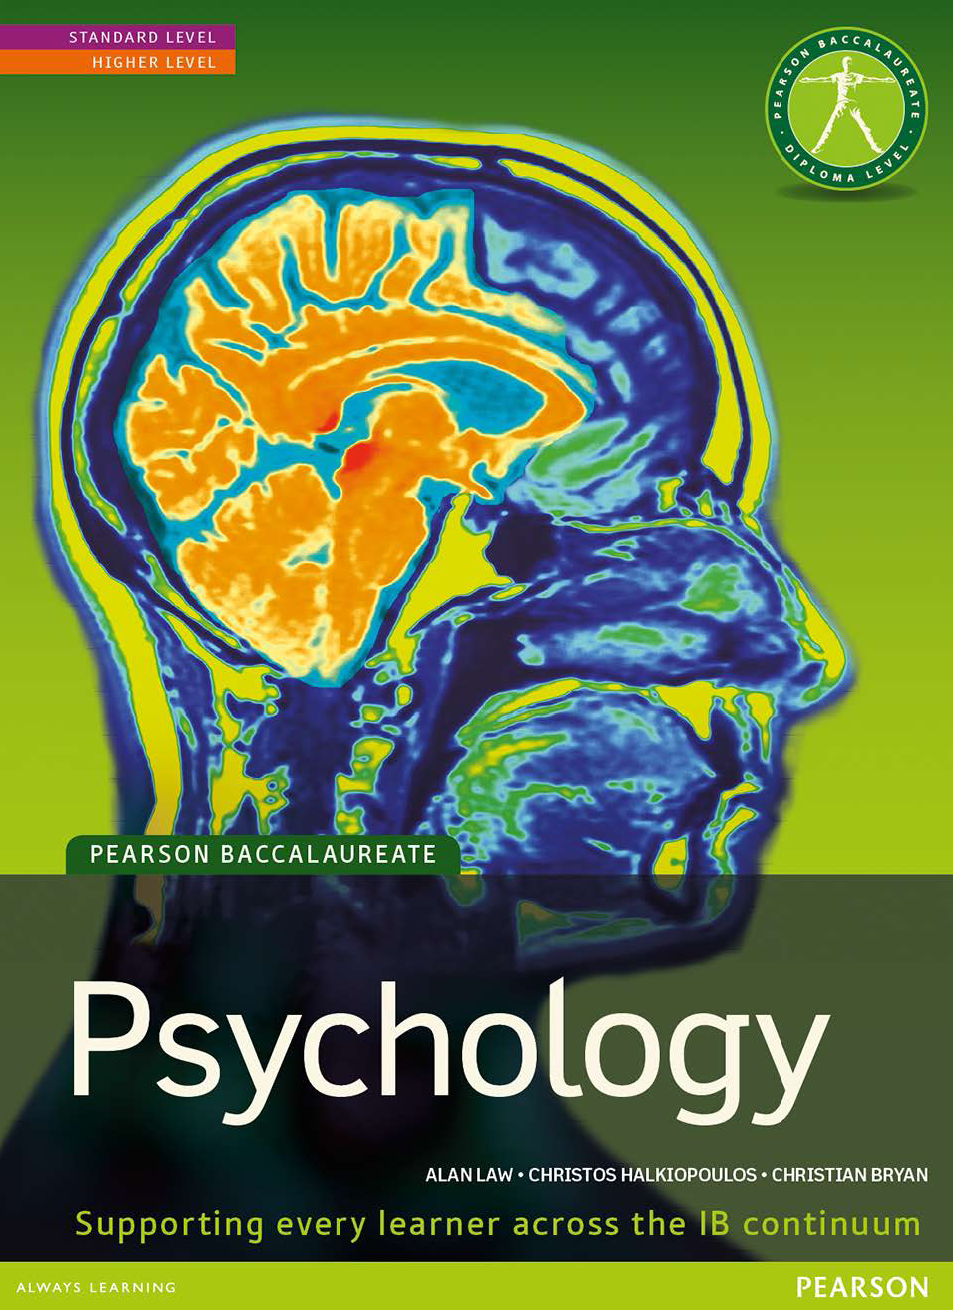 历年国际IB psychology课程教材课本